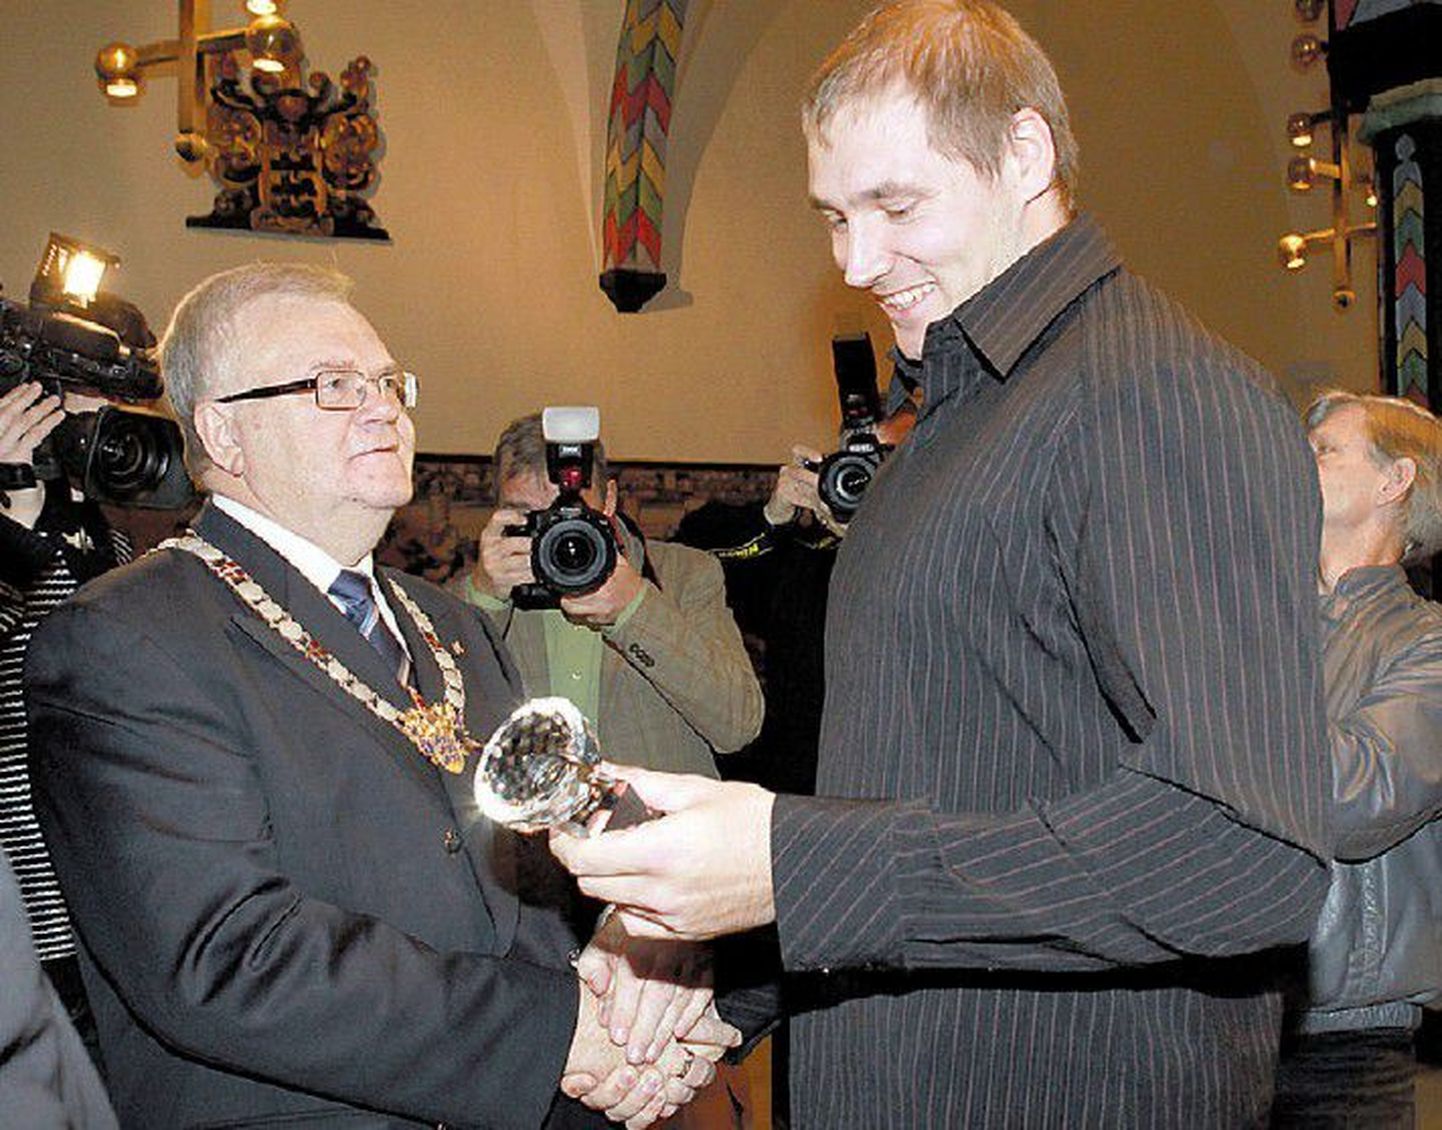 Герд Кантер (справа) собирает награды не только на стадионе. 1 декабря мэр города Эдгар Сависаар чествовал Кантера как лучшего спортсмена Таллинна, а неделю назад Эстонский союз легкой атлетики объявил дискобола лучшим спортсменом года.